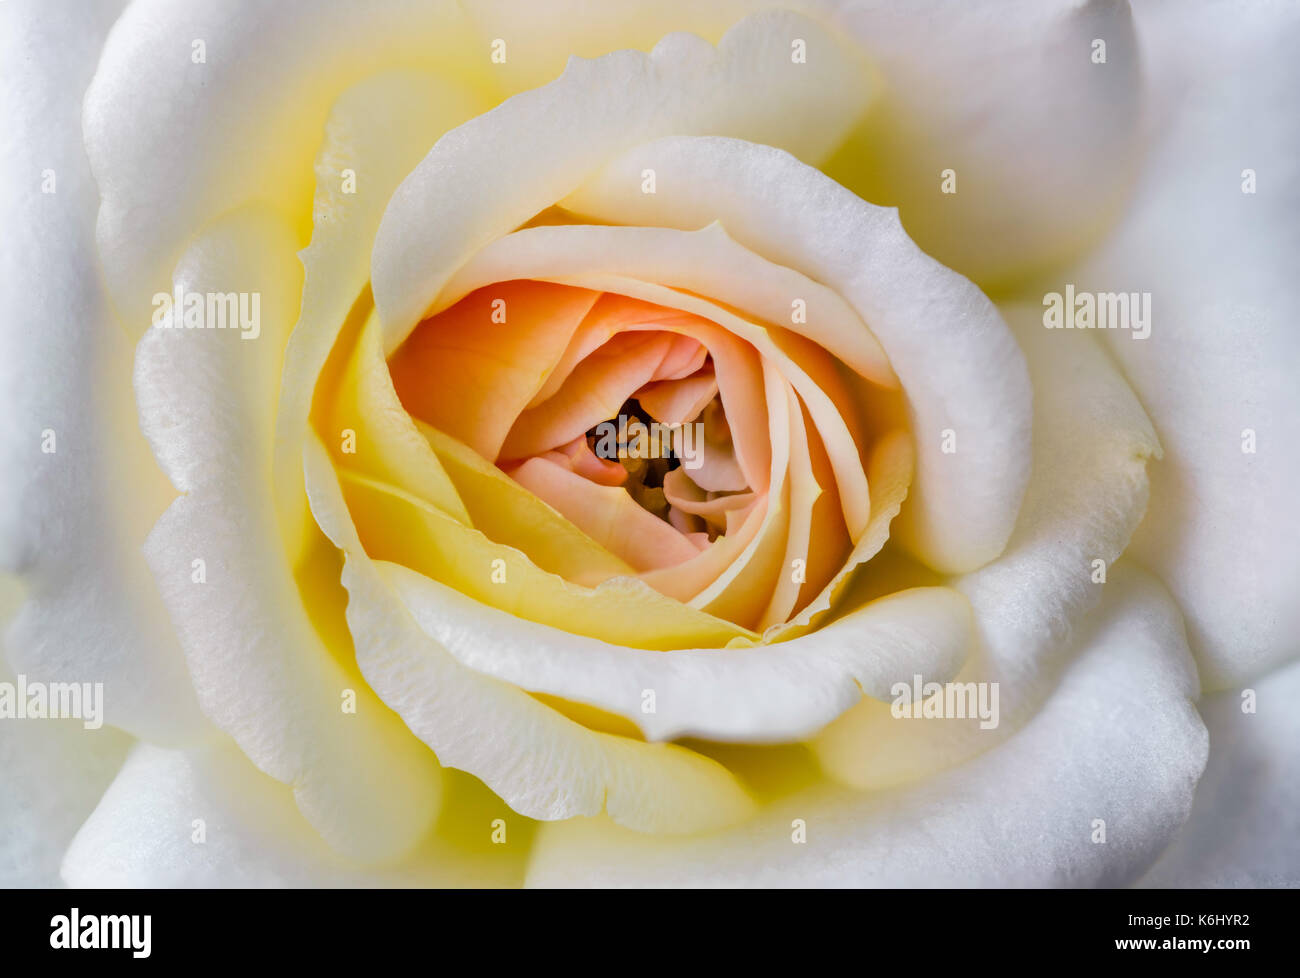 Messa a fuoco macro impilati closeup di un bel bianco petali di rose, con un rosso arancio e giallo centro. che mostra un sacco di consistenza e di colore. Foto Stock